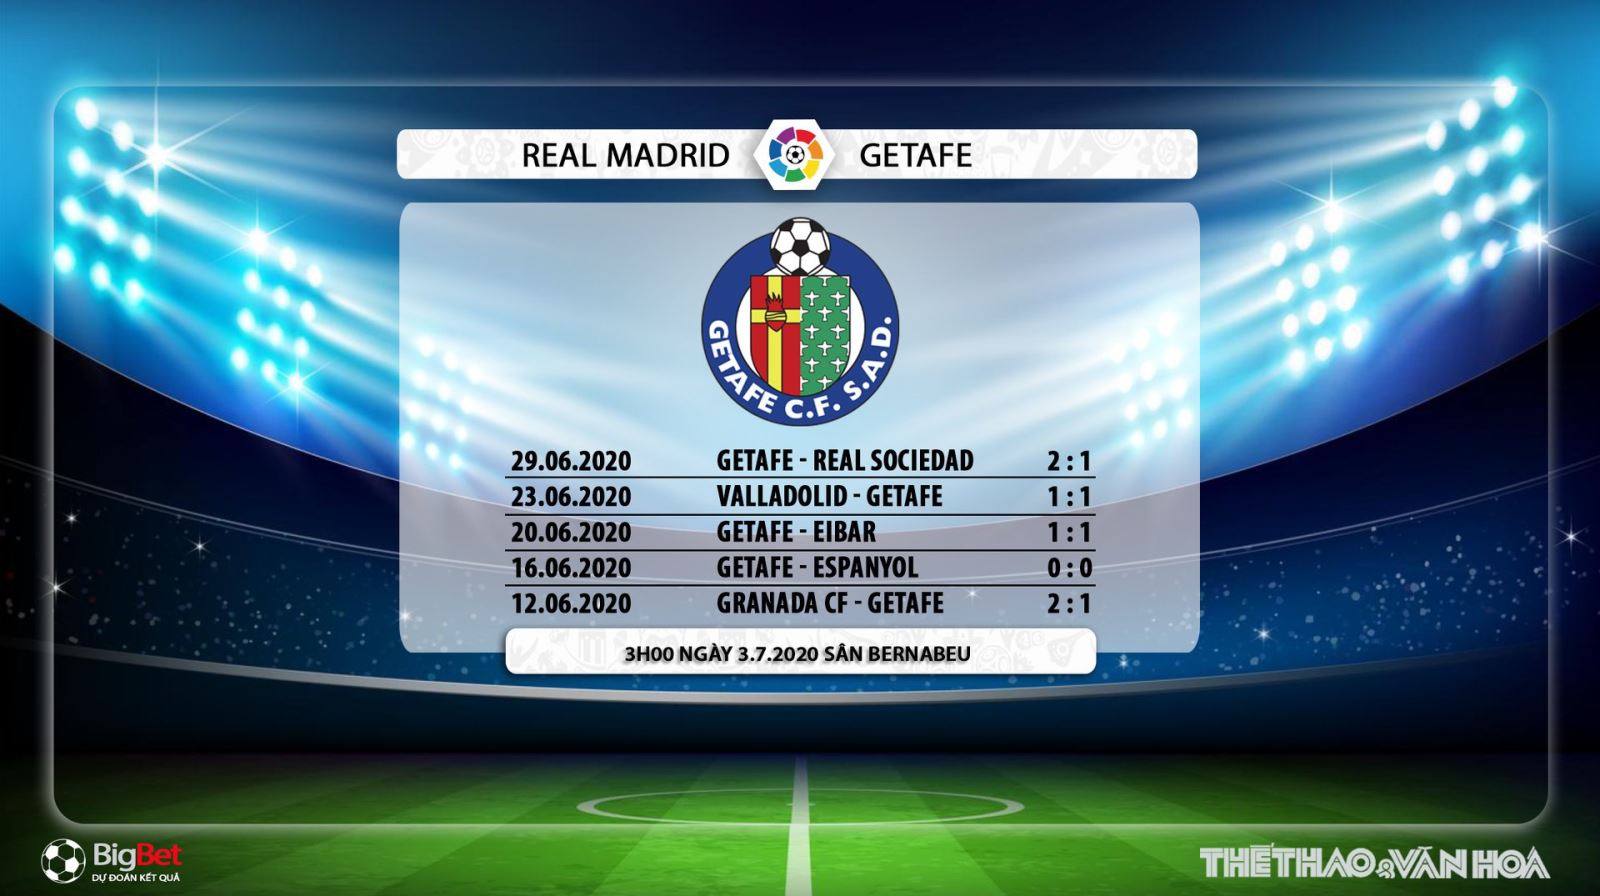 Real Madrid vs Getafe, bóng đá, trực tiếp Real Madrid vs Getafe, soi kèo Real Madrid vs Getafe, lịch thi đấu, nhận định, dự đoán, kèo bóng đá, soi kèo